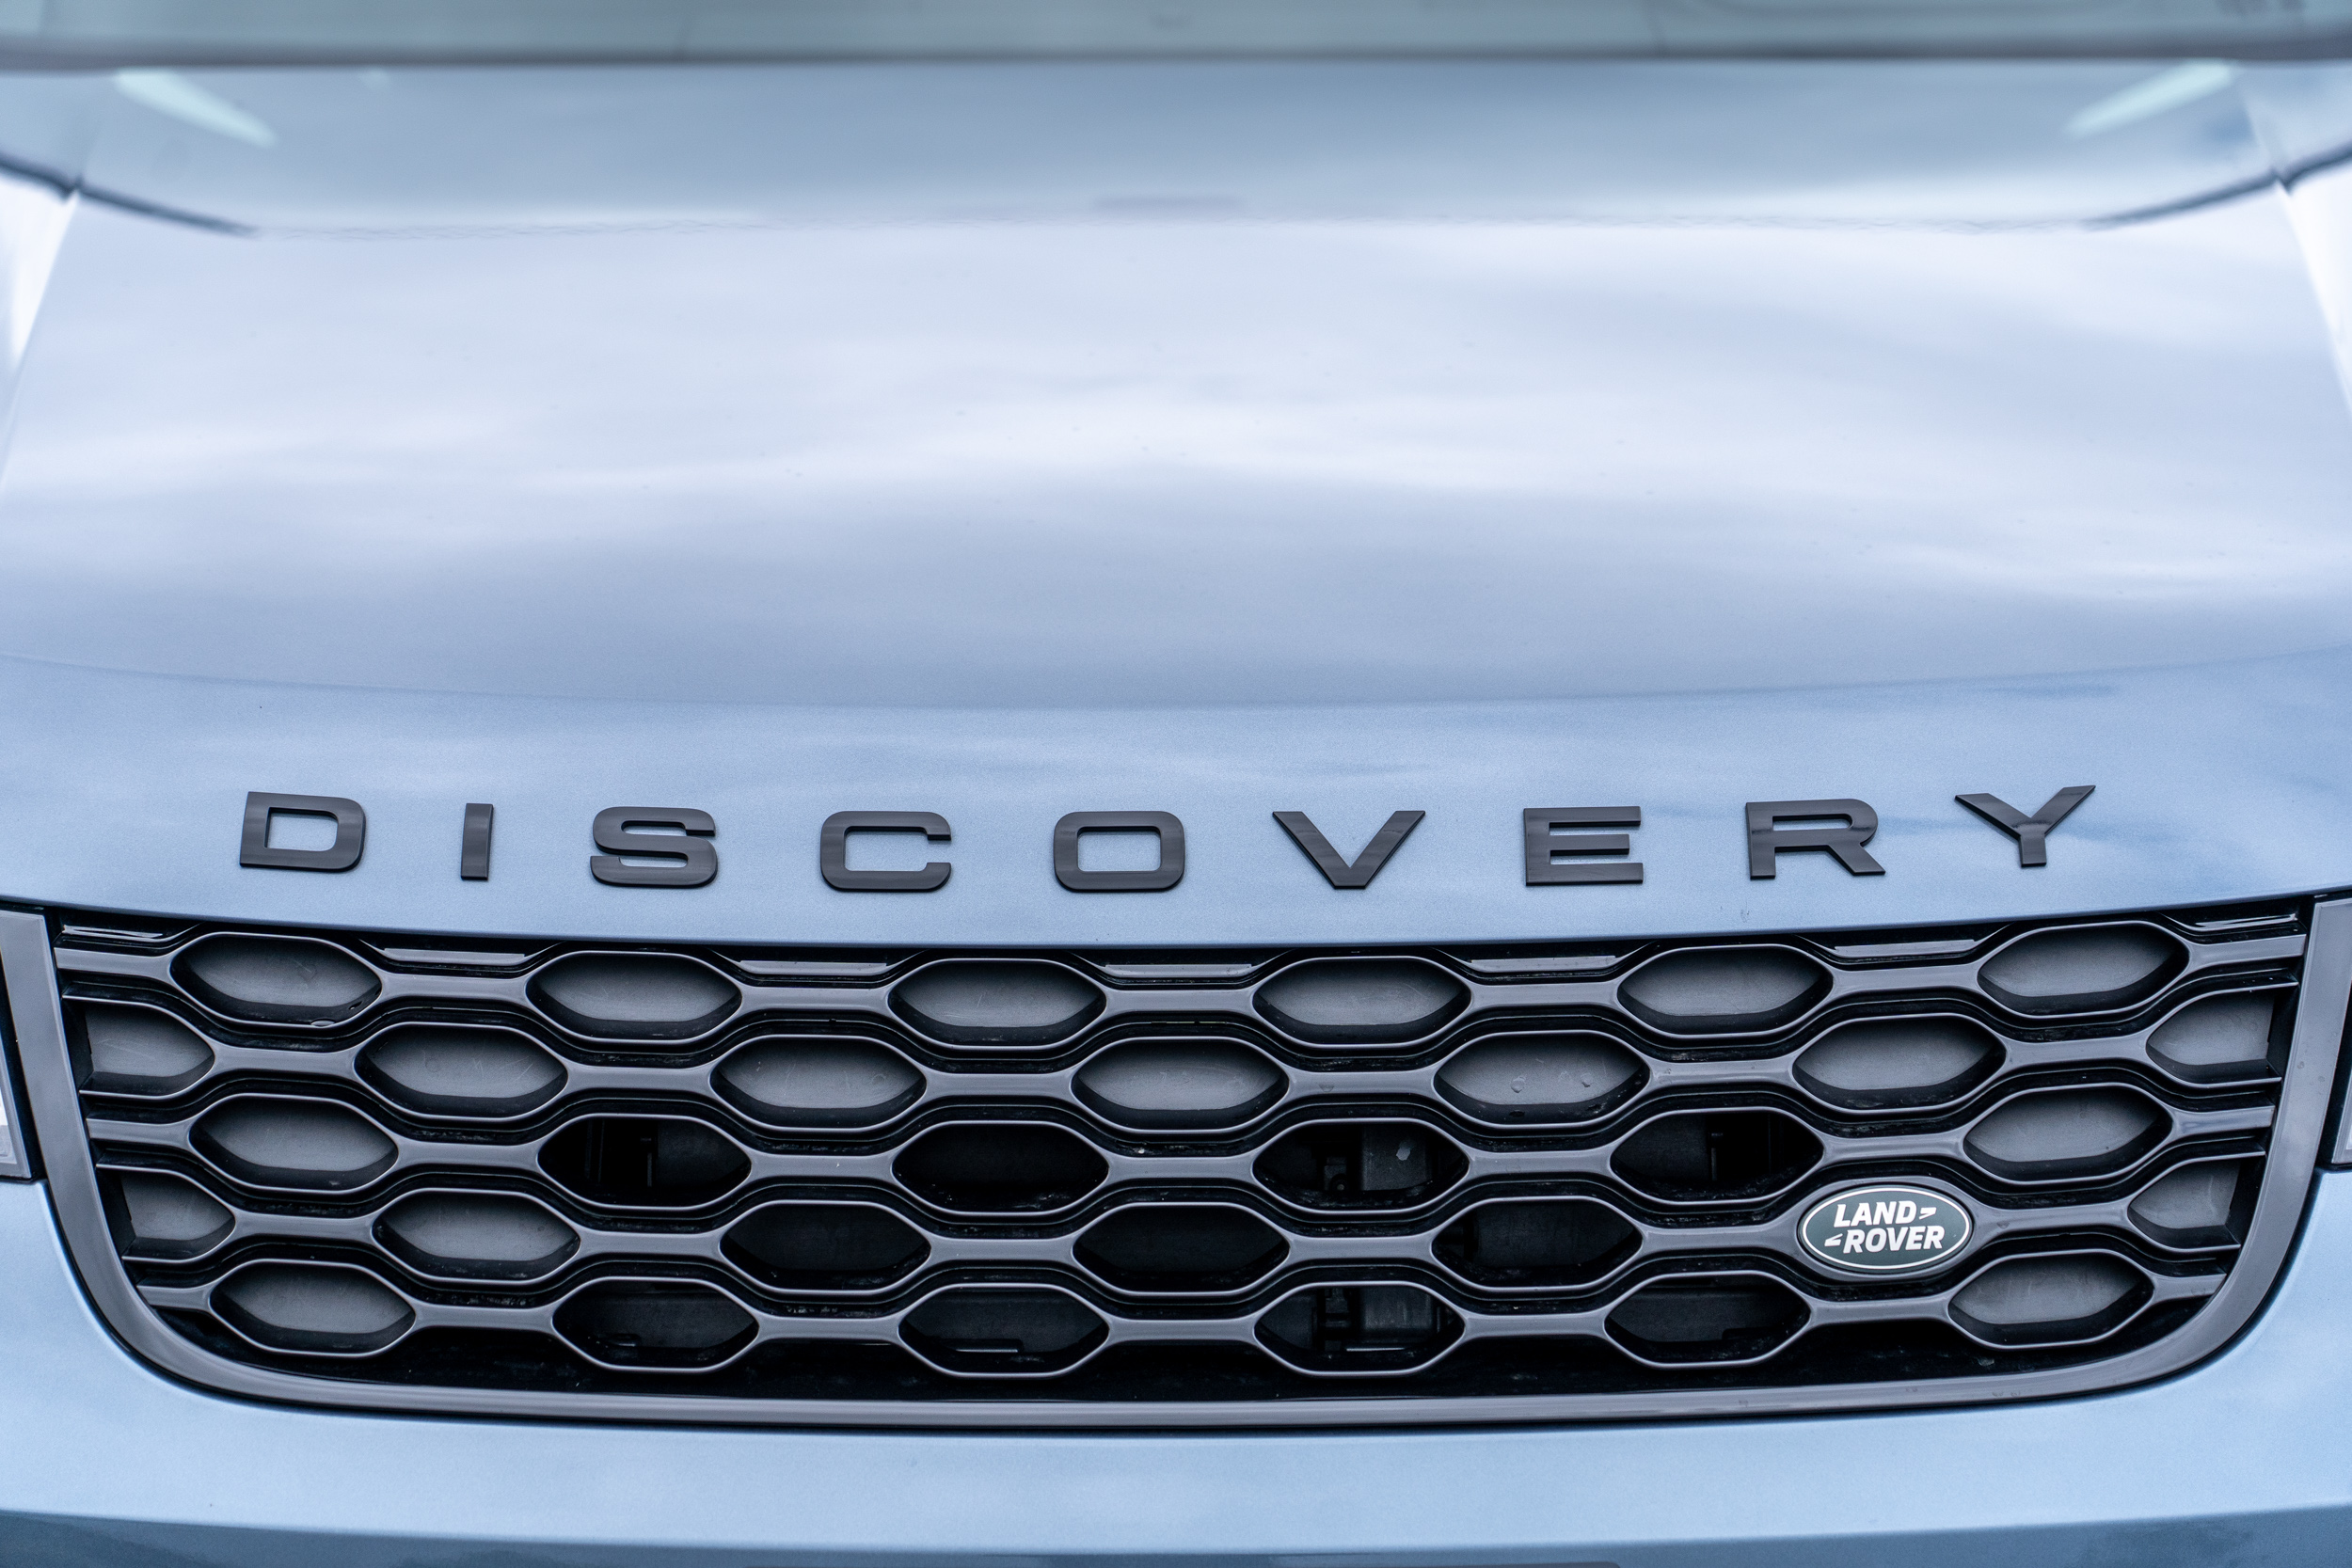 黑化元素是近年來 Land Rover 會常常納入配備選單的產品之一，可在視覺上凸顯出對比感。